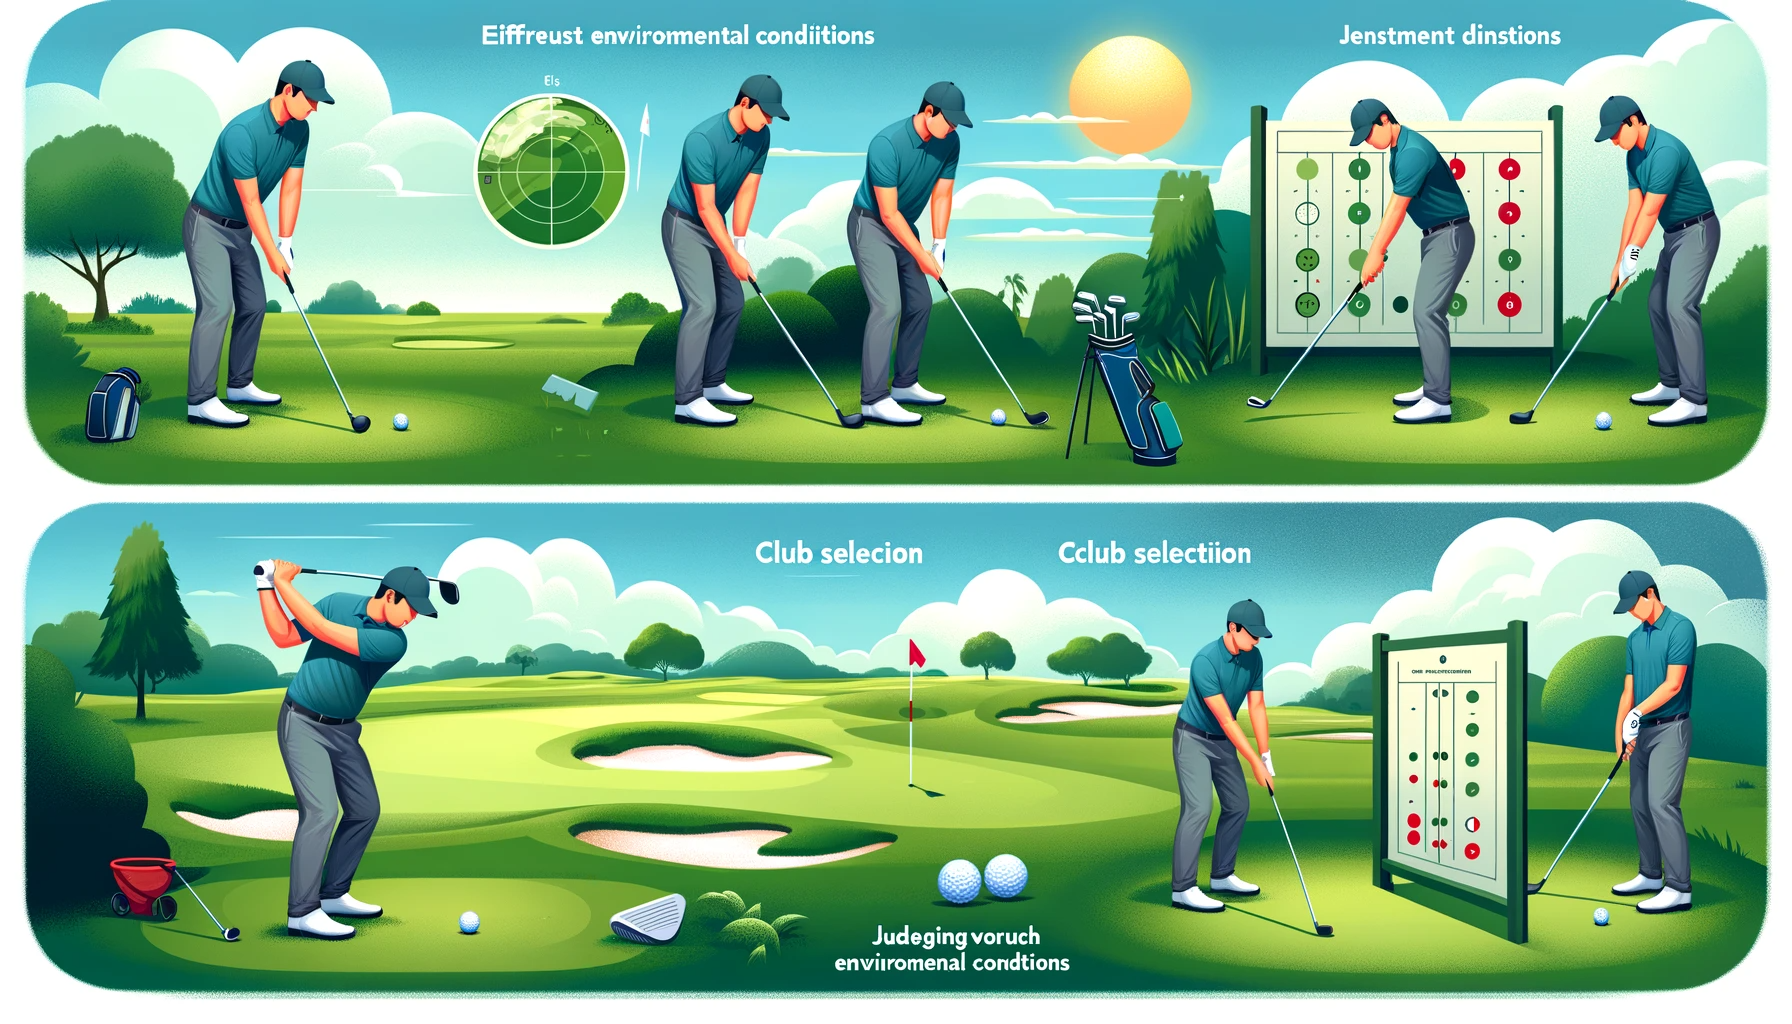 골프 실력 향상을 위한 연습 방법 - 공을 향한 정확한 샷 연습